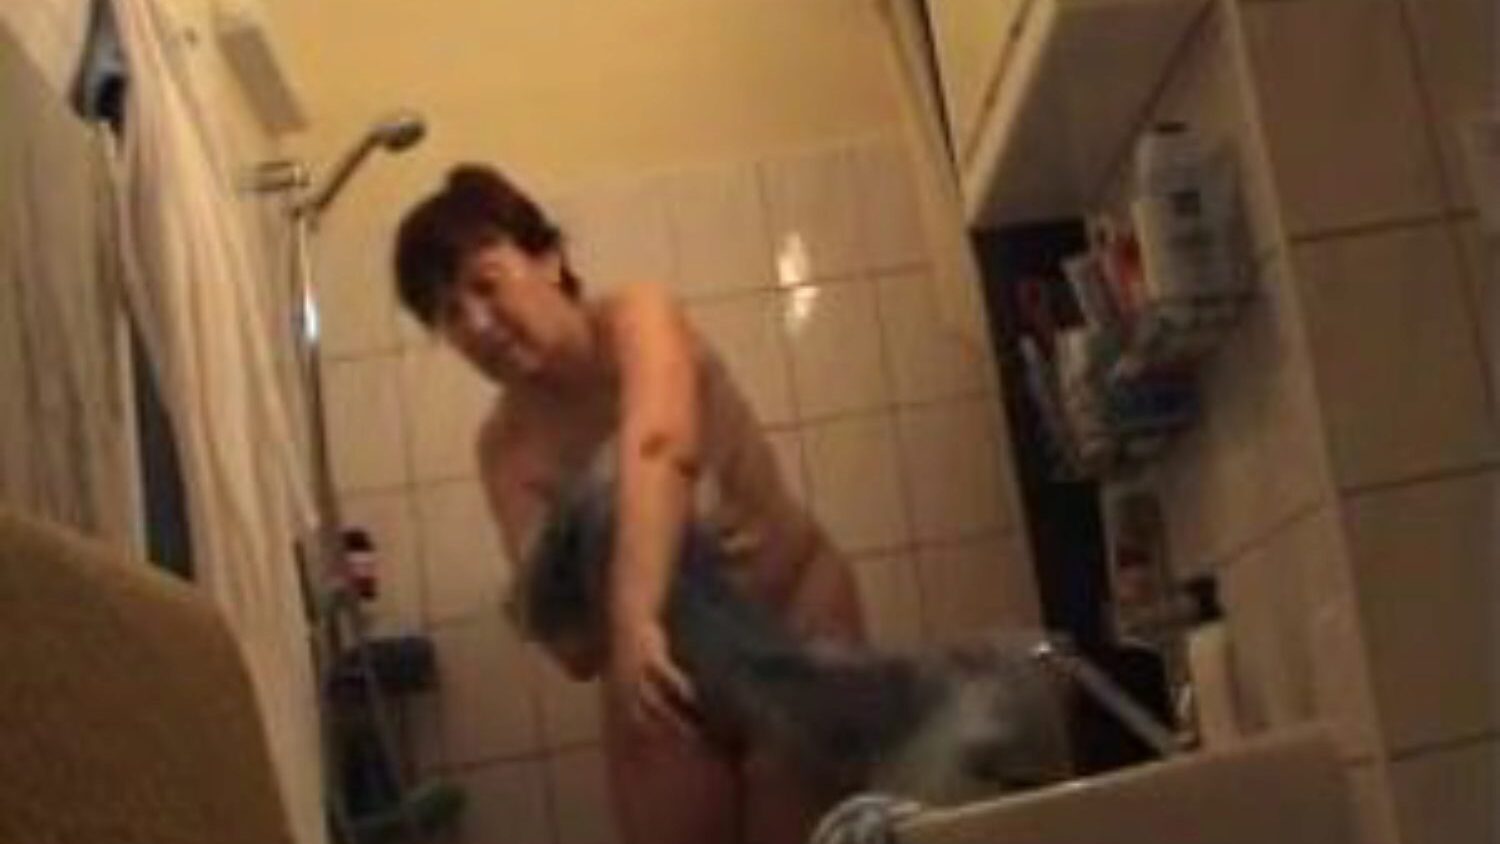 tysk mormor naken i badrummet, gratis tyskarnas porrvideoannons tysk mormor naken i badrummet video på xhamster, den fetaste anslutningsrörets webbresurs med massor av gratis tyskar naken mormor & mogna porrfilmer